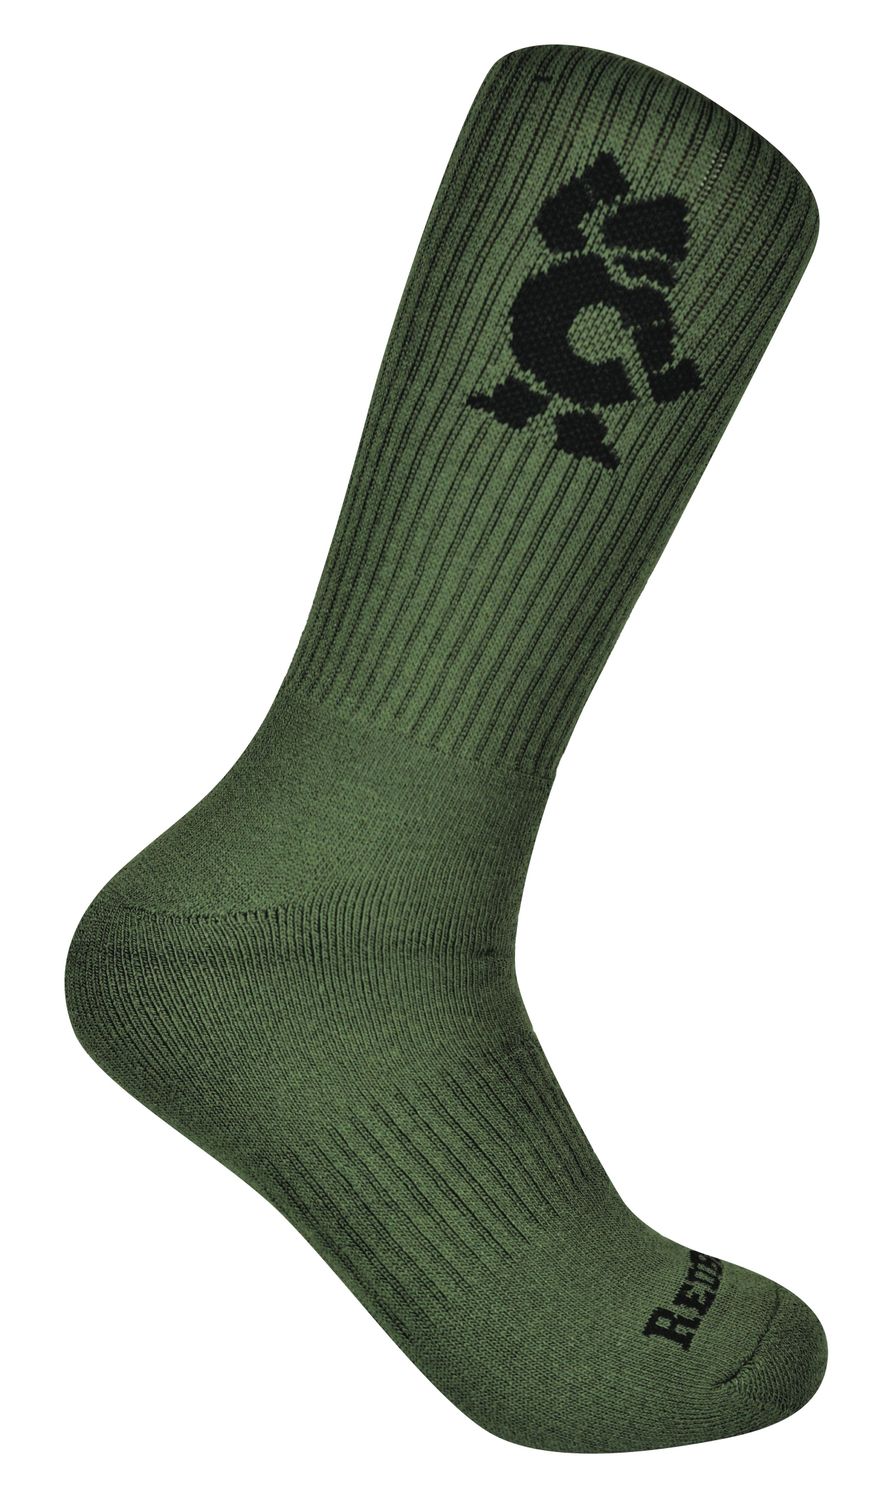 RBB05 - Cornwell® Crew Socks, Olive Green/Black (6-Pack)